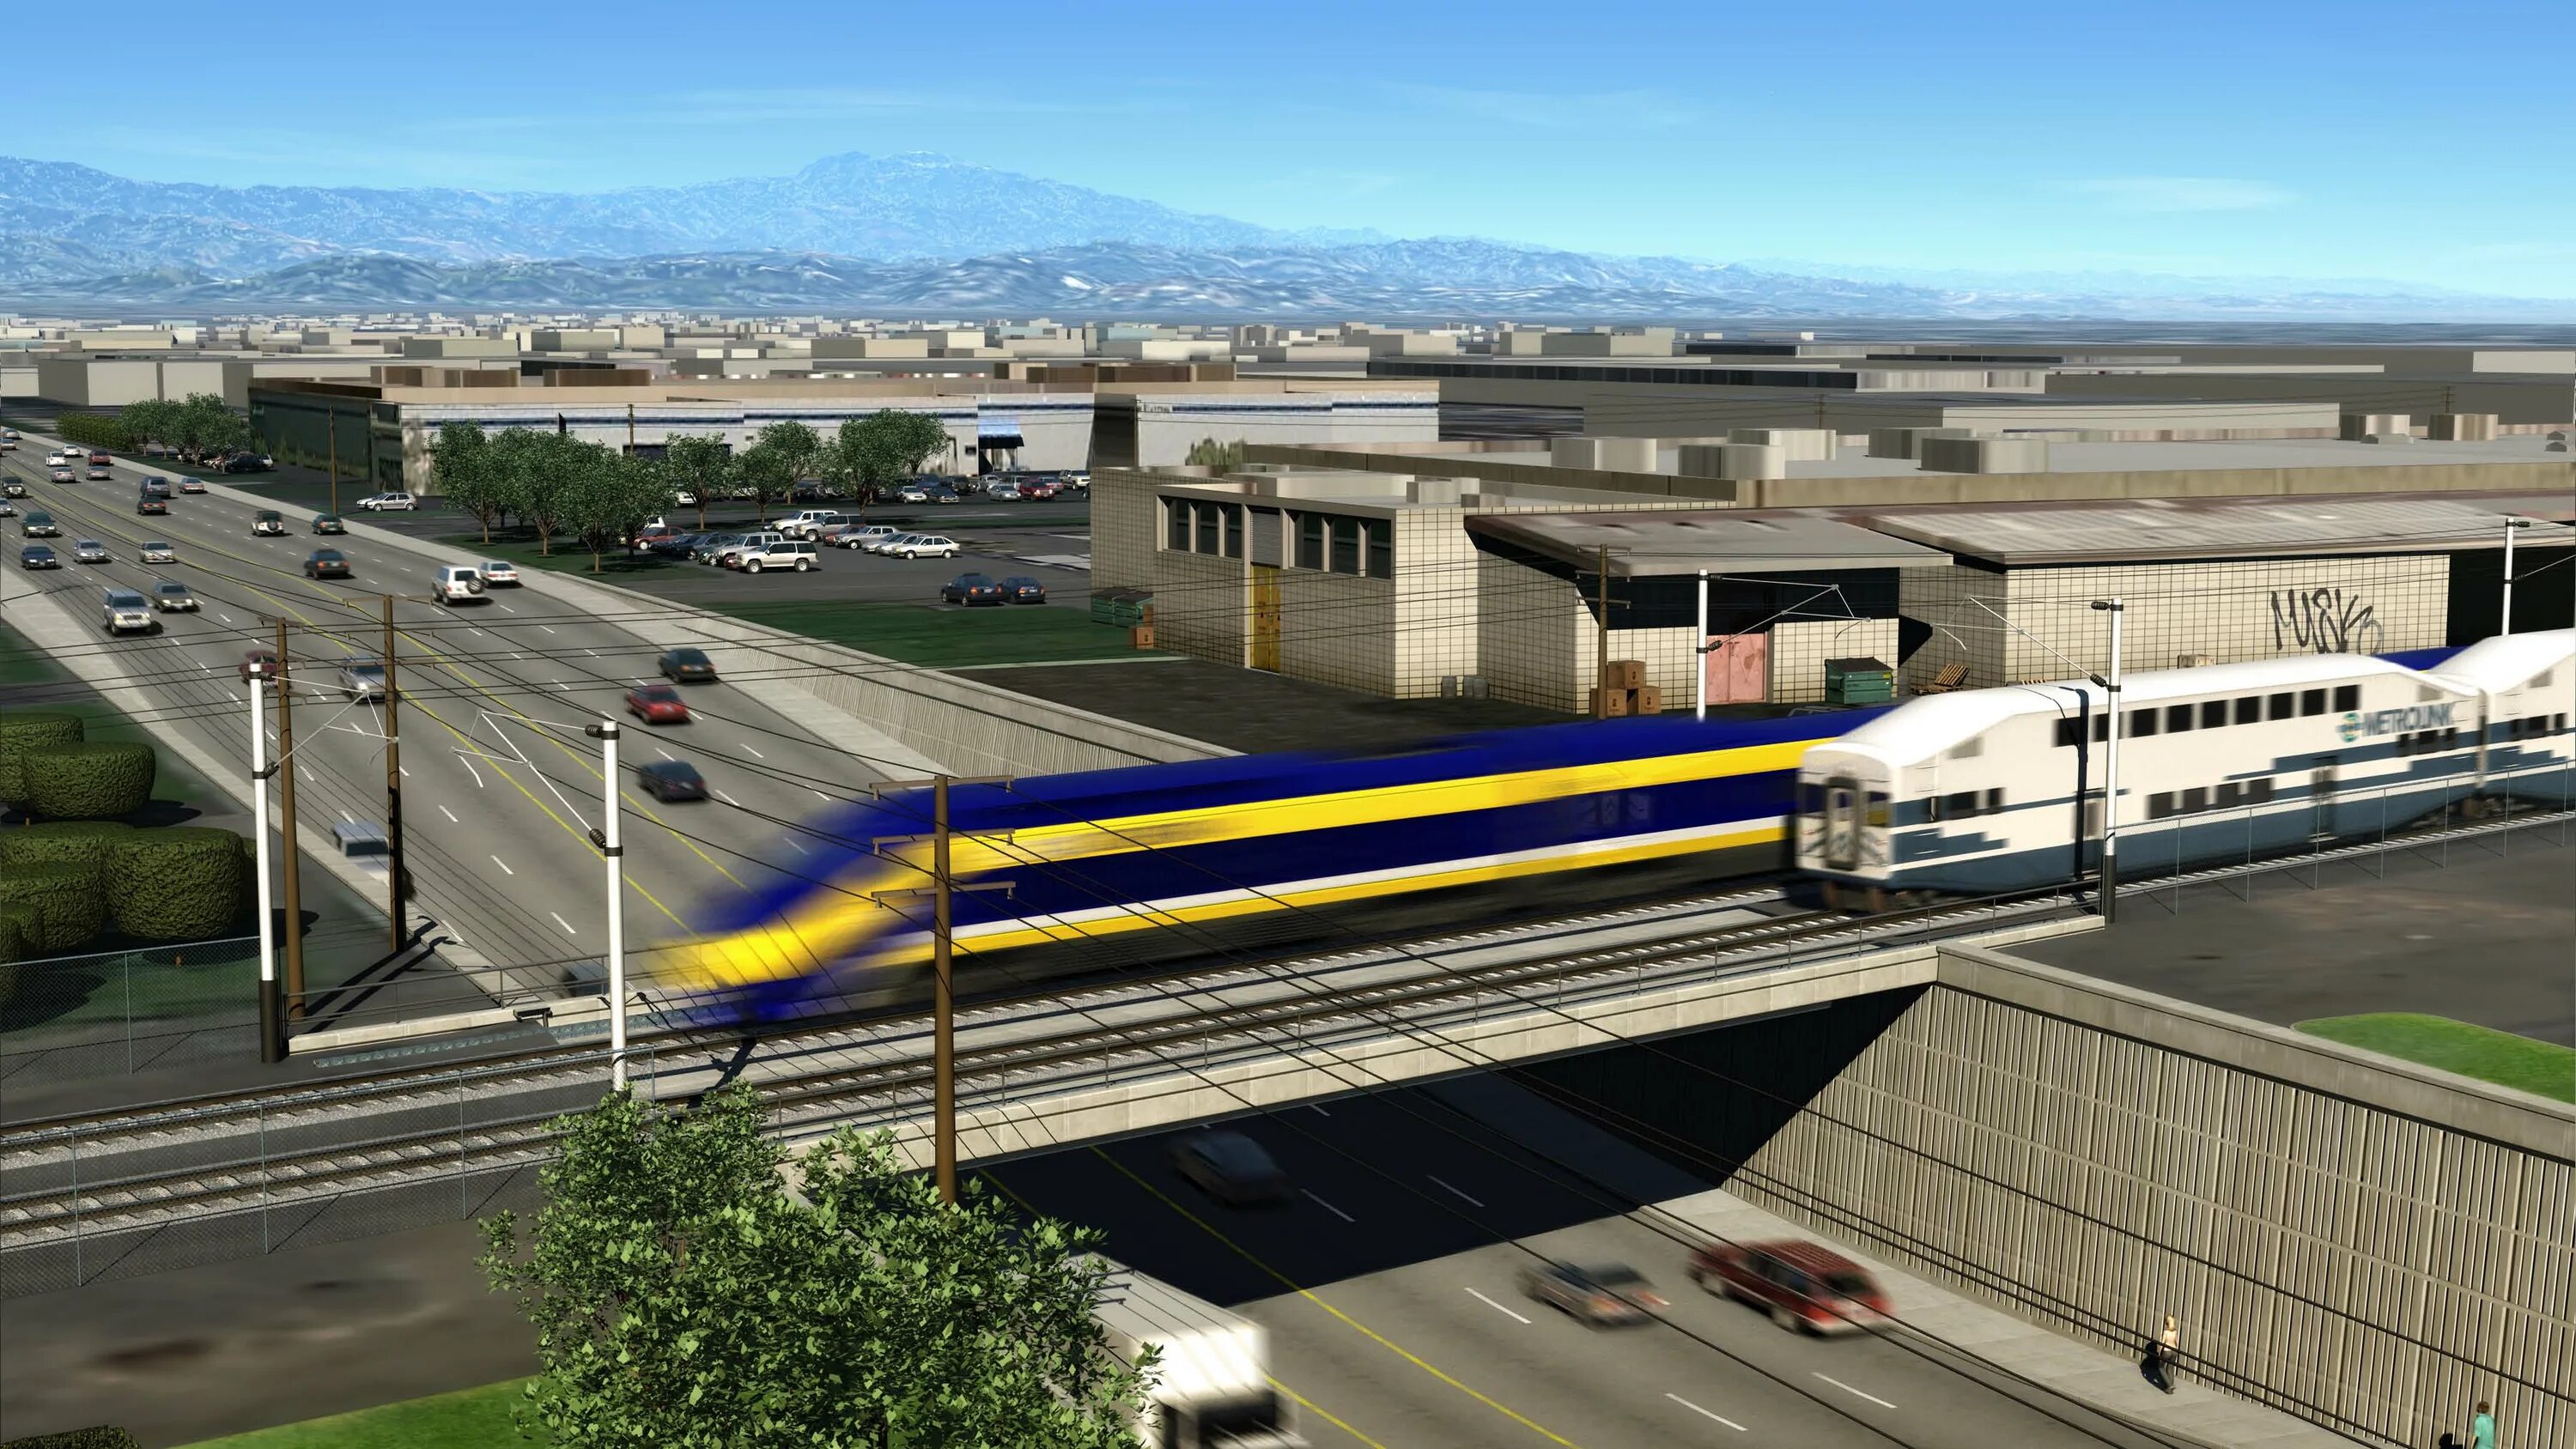 Hsr interactive. Калифорнийская железная дорога. ЖД Лос Анджелес. Скоростной поезд Лос Анджелес. California High-Speed Rail.